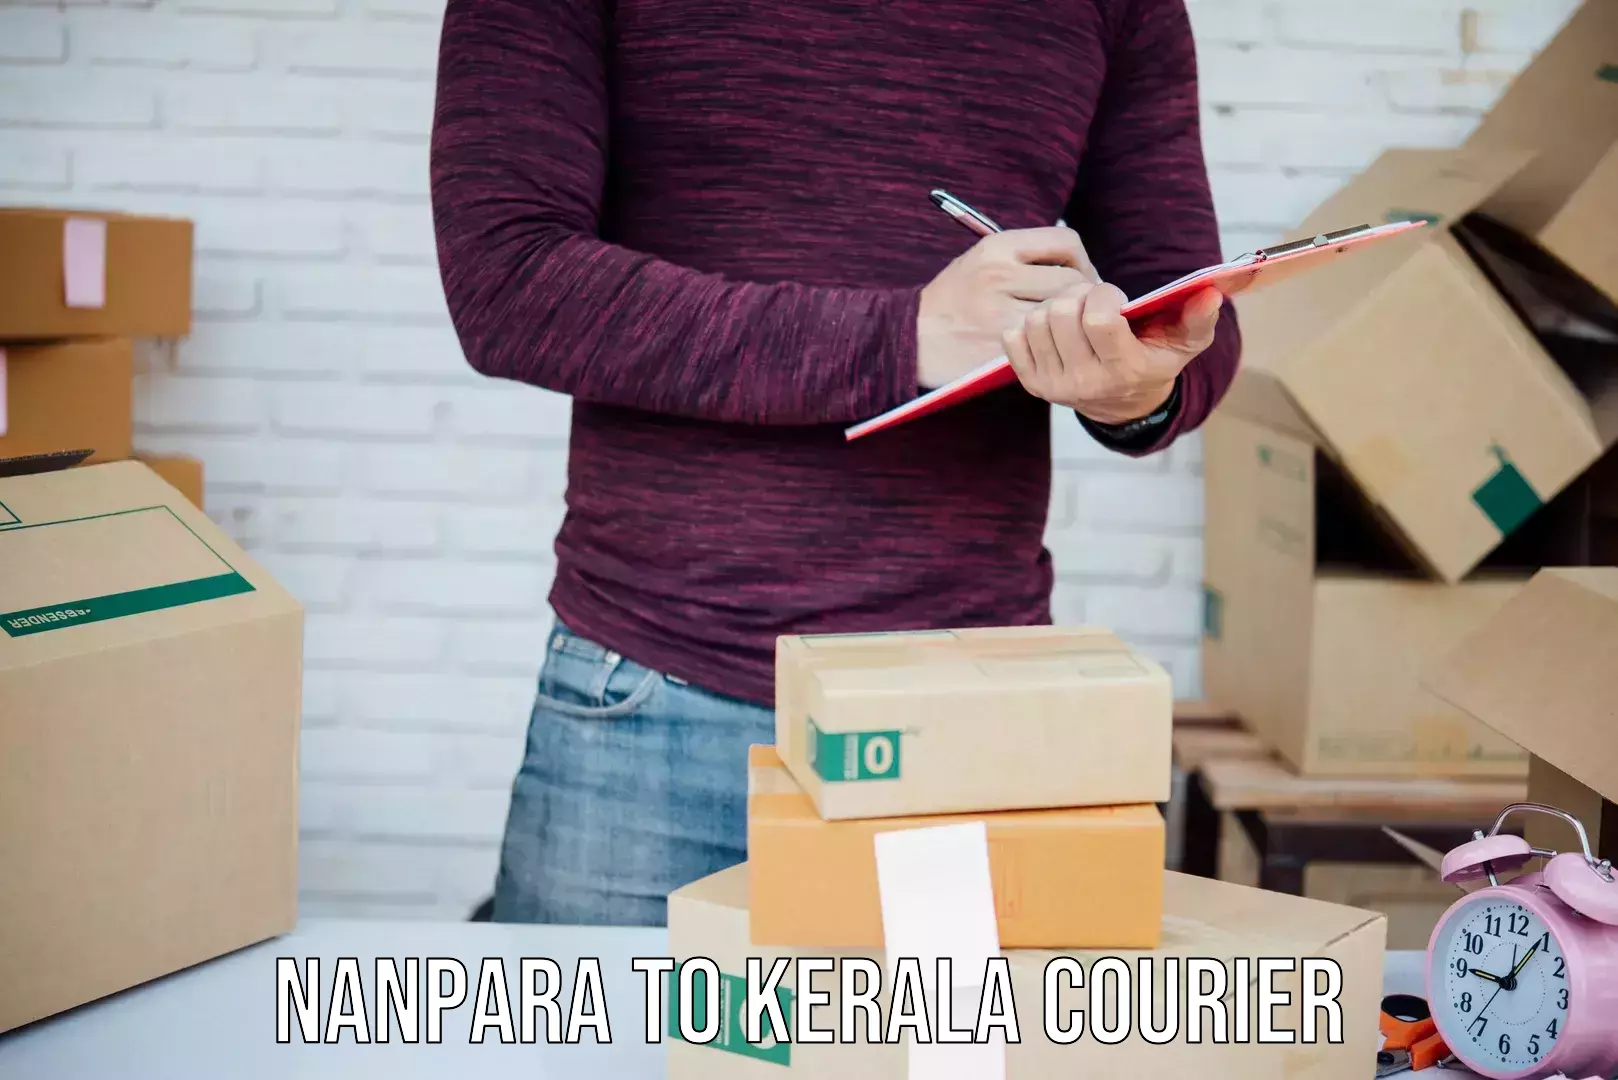 Express postal services Nanpara to Taliparamba